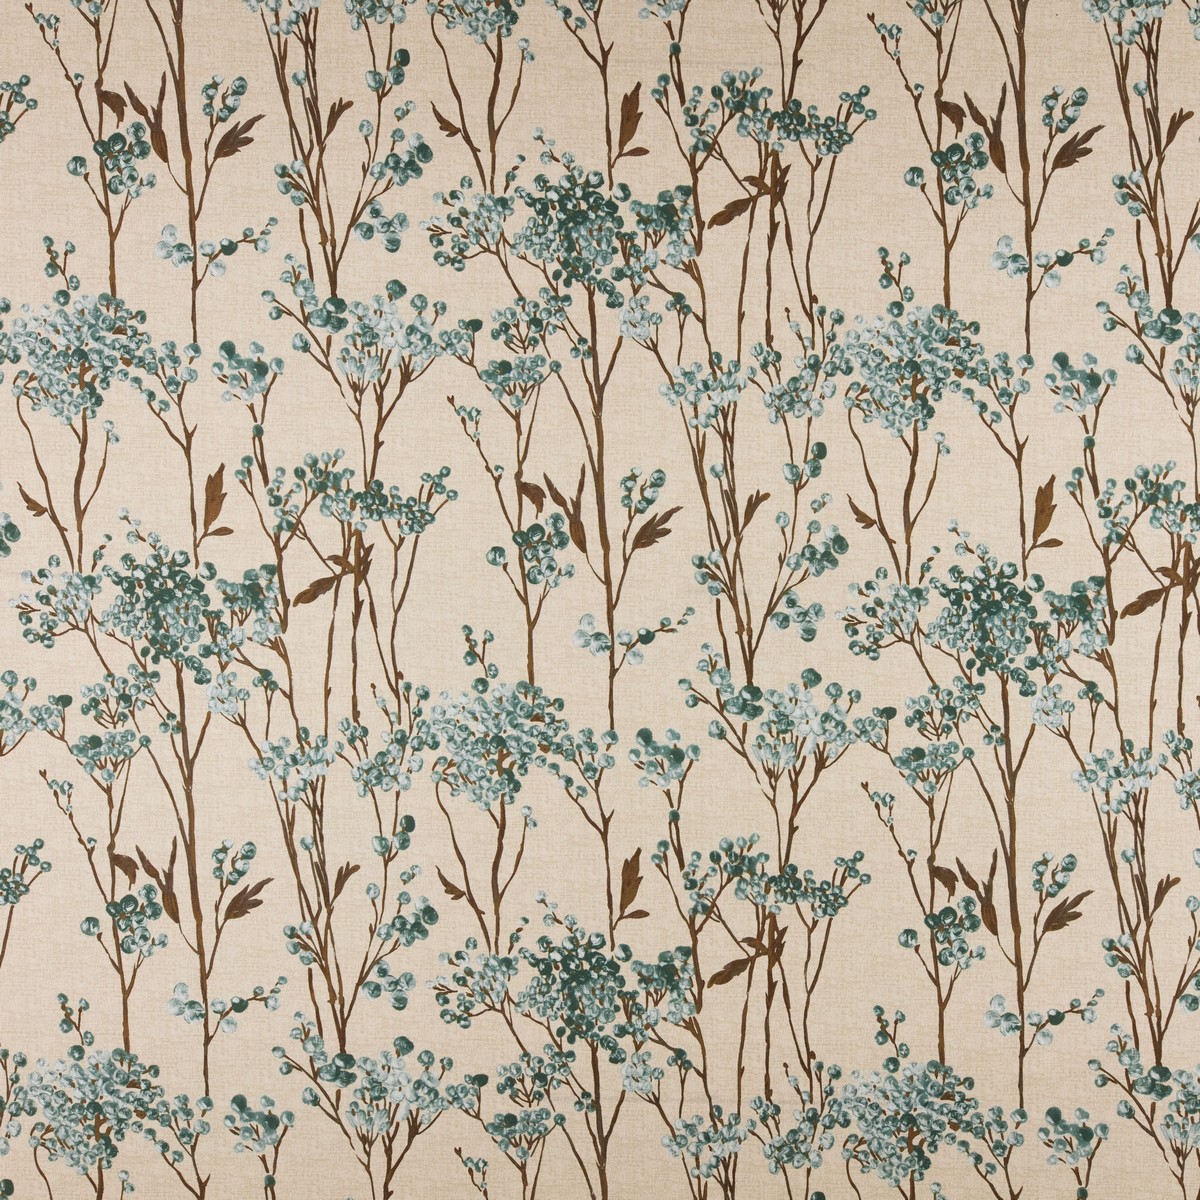 Hawthorn Kingfisher Fabric by Ashley Wilde